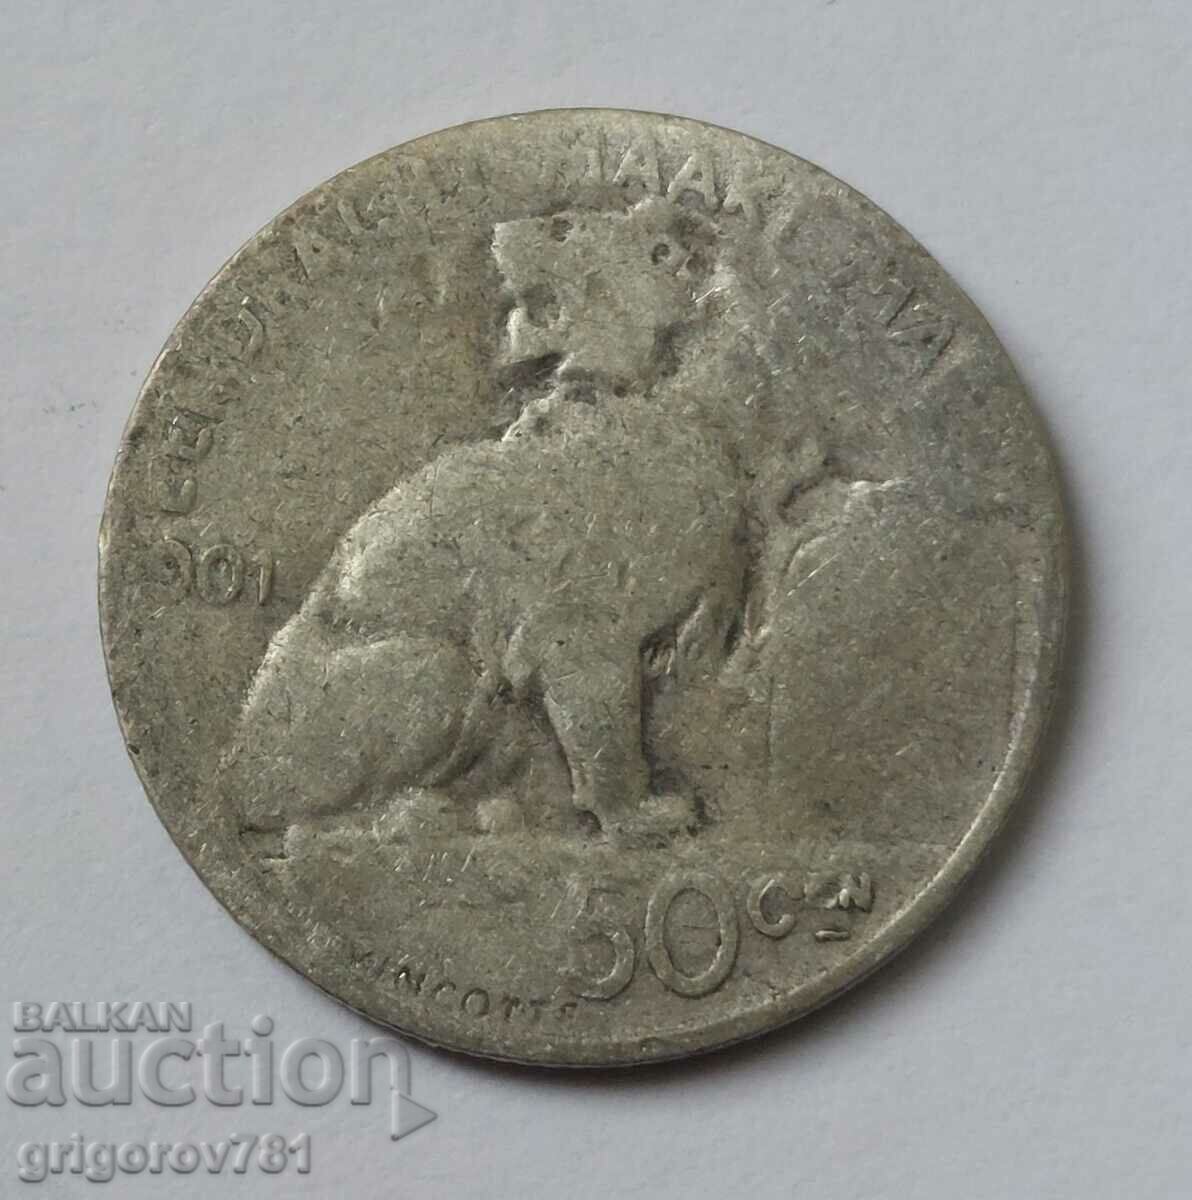 Ασημένιο 50 cm Βέλγιο 1901 - ασημένιο νόμισμα #76